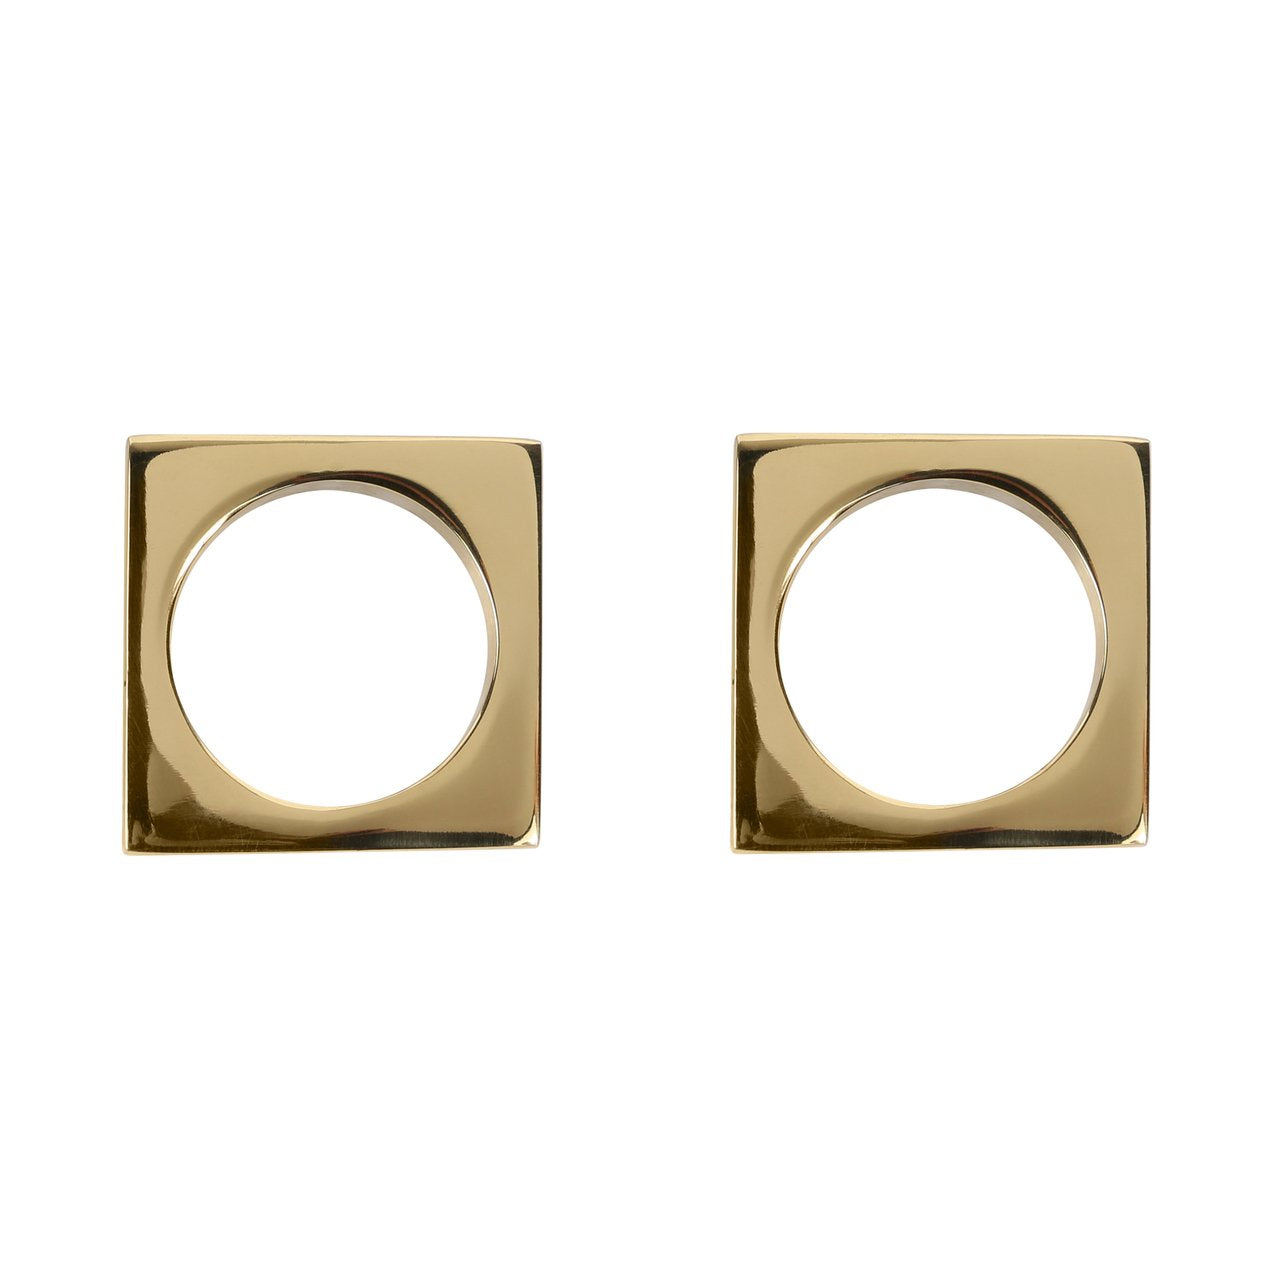 Modernist Napkin Rings - Set of 2